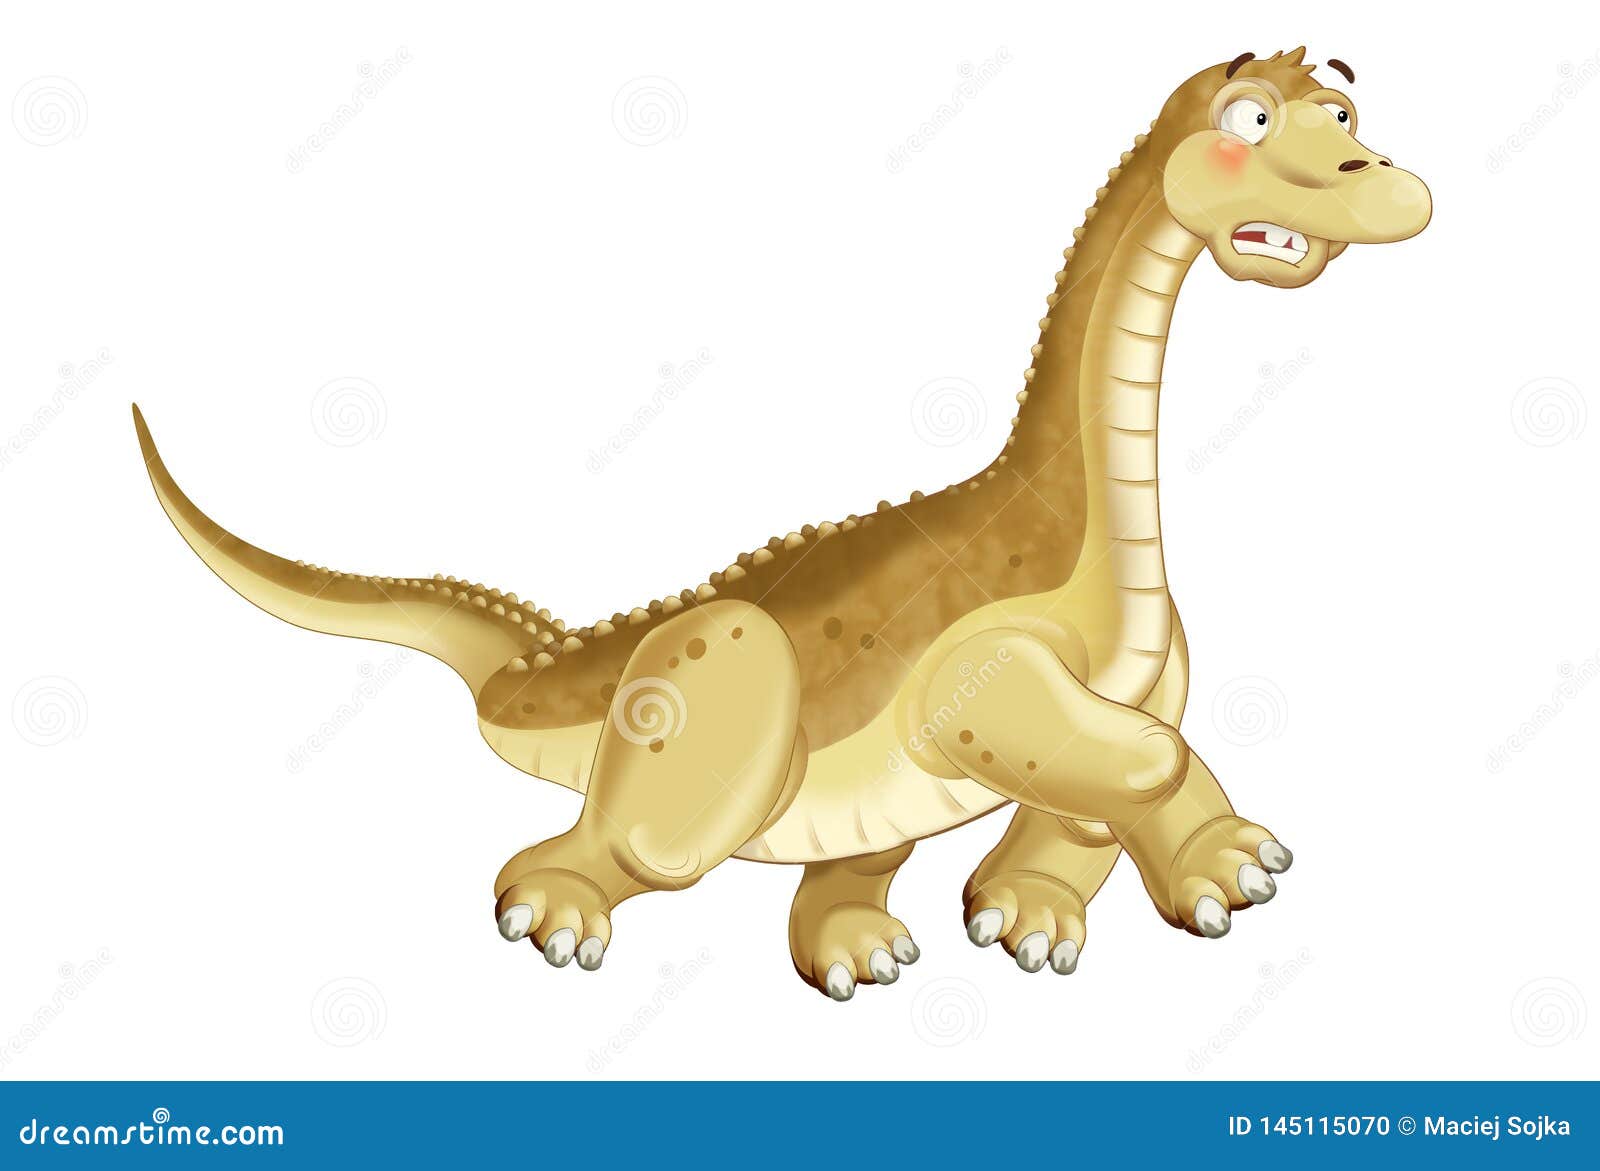 Dibujo Apatosauro De Los Diplodocumentos De Los Dinosaurios Para Niños  Stock de ilustración - Ilustración de monstruo, dinosaurio: 145115070